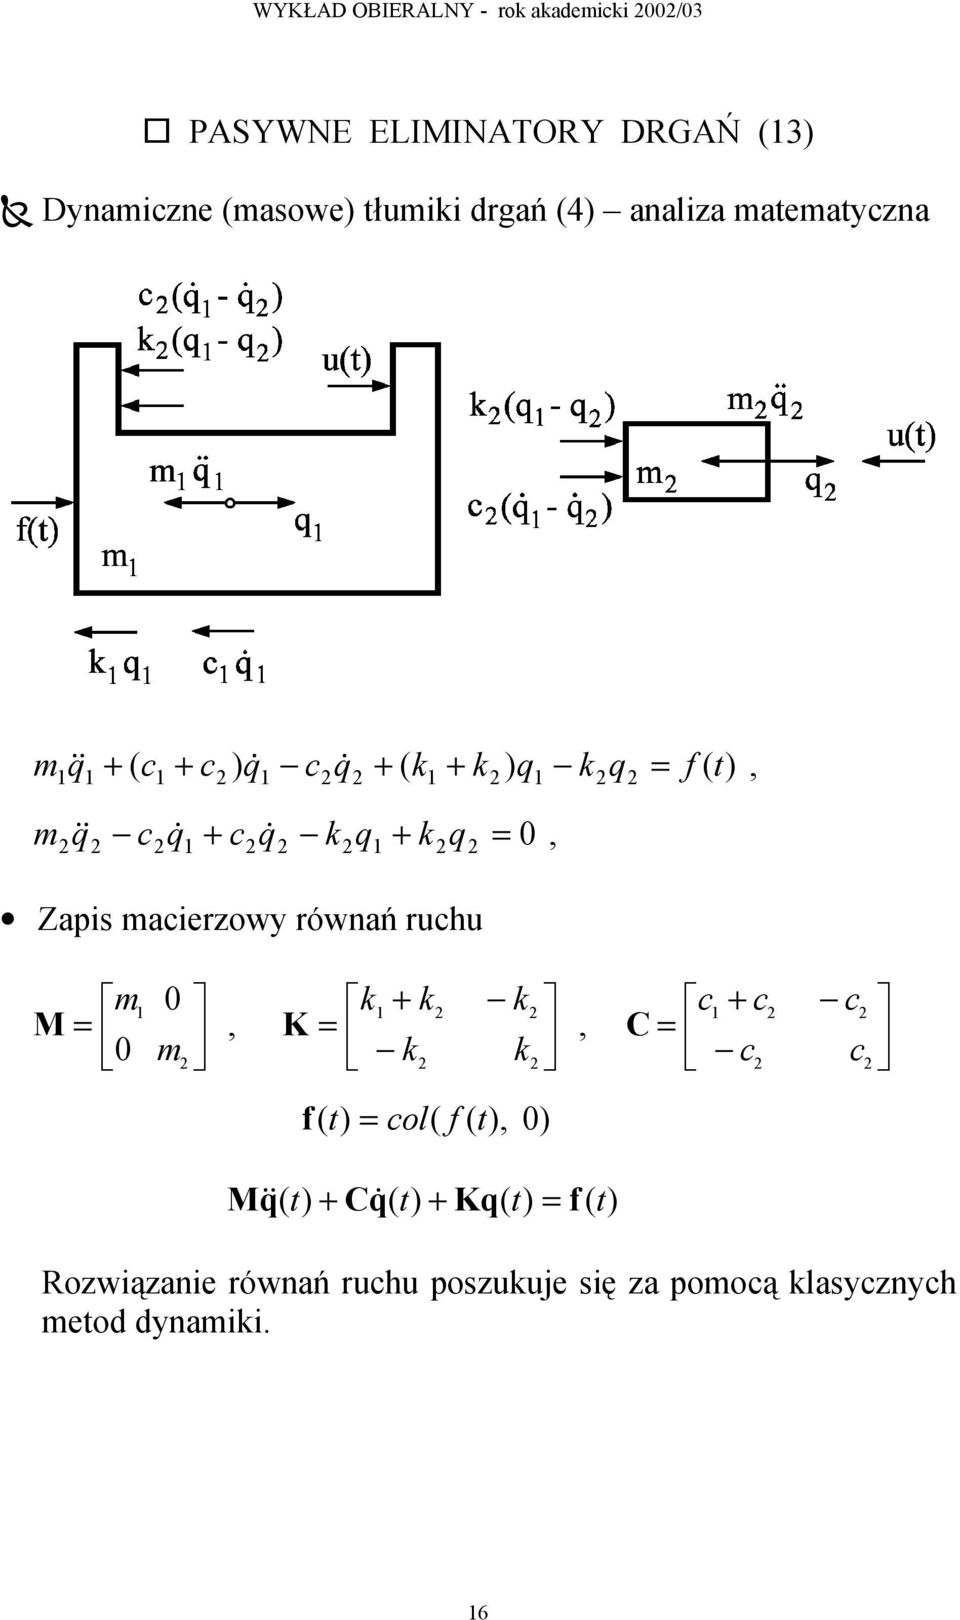 Zapis macierzowy równań ruchu M = m 0 1 0 m 2, K = k + k k k k 1 2 2 2 2, C = c + c c 1 2 2 c c 2 2 f ( t ) =